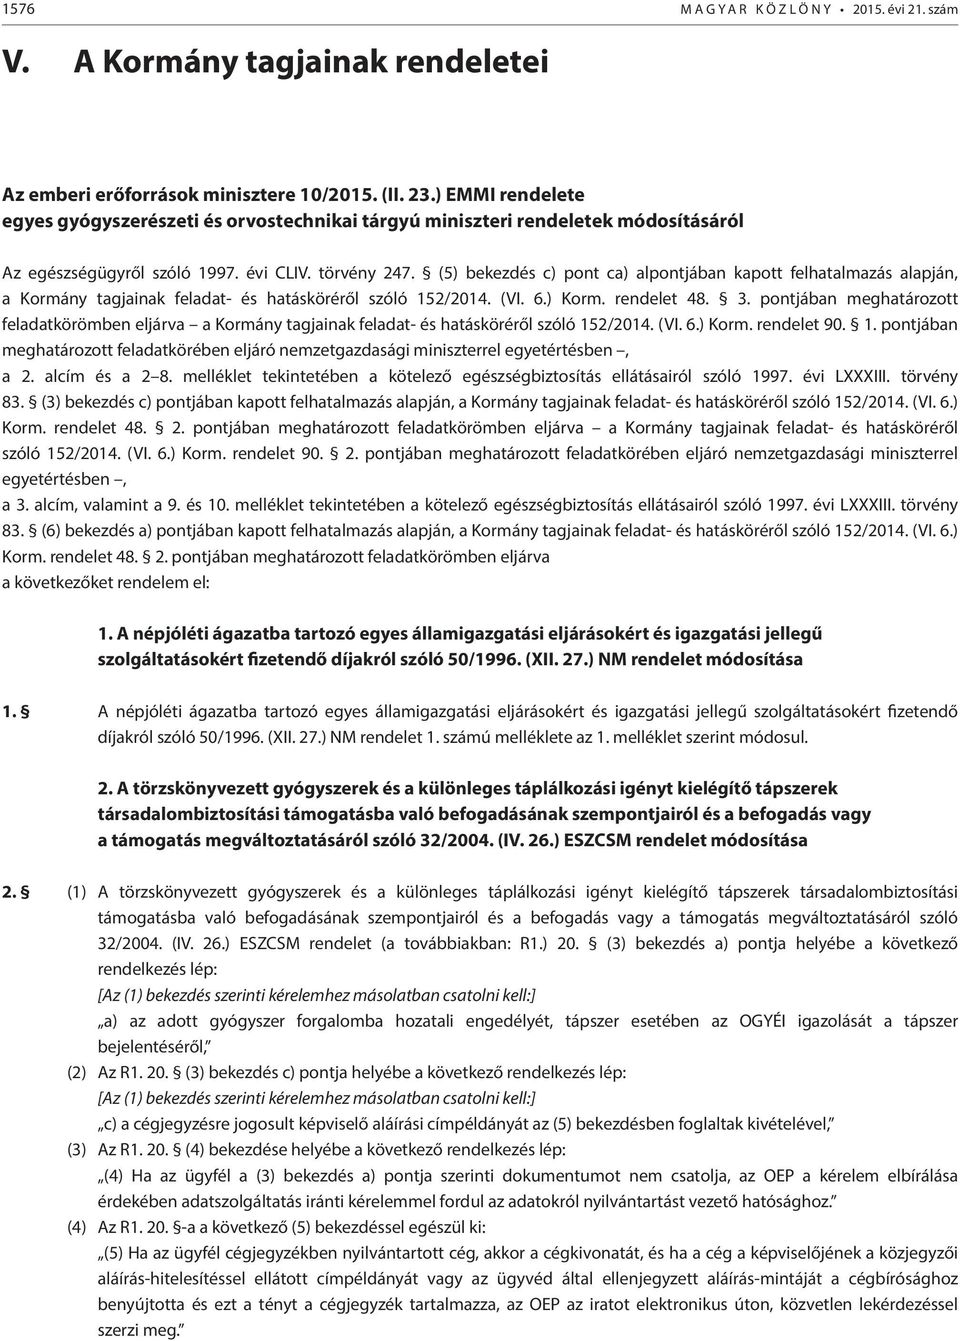 (5) bekezdés c) pont ca) alpontjában kapott felhatalmazás alapján, a Kormány tagjainak feladat- és hatásköréről szóló 152/2014. (VI. 6.) Korm. rendelet 48. 3.